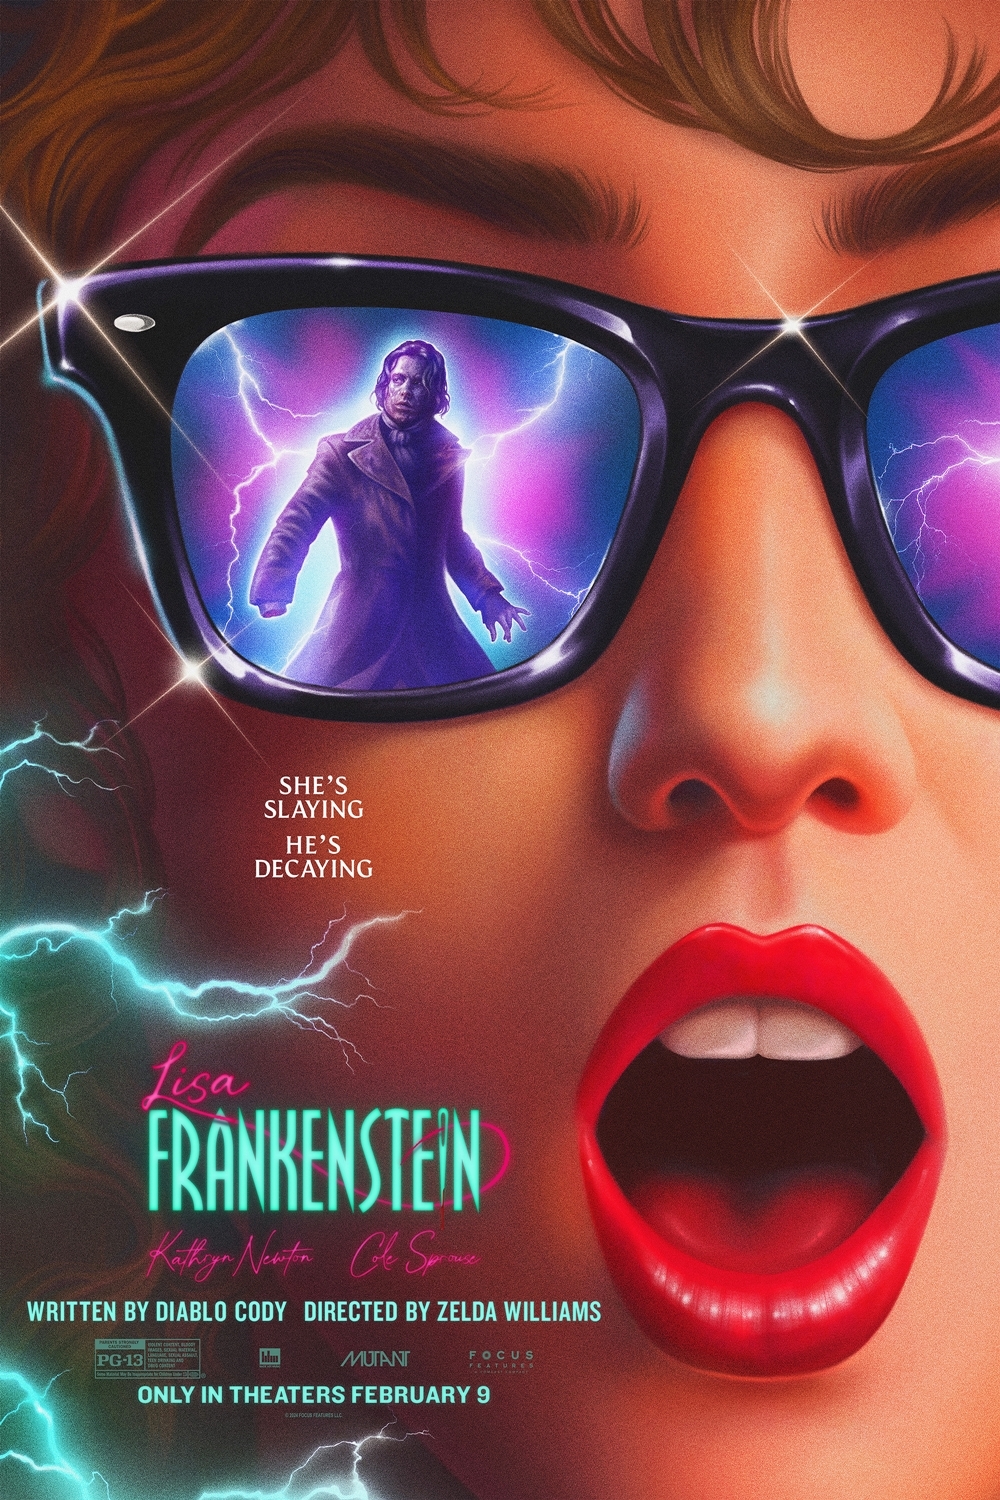 Poster for Lisa Frankenstein